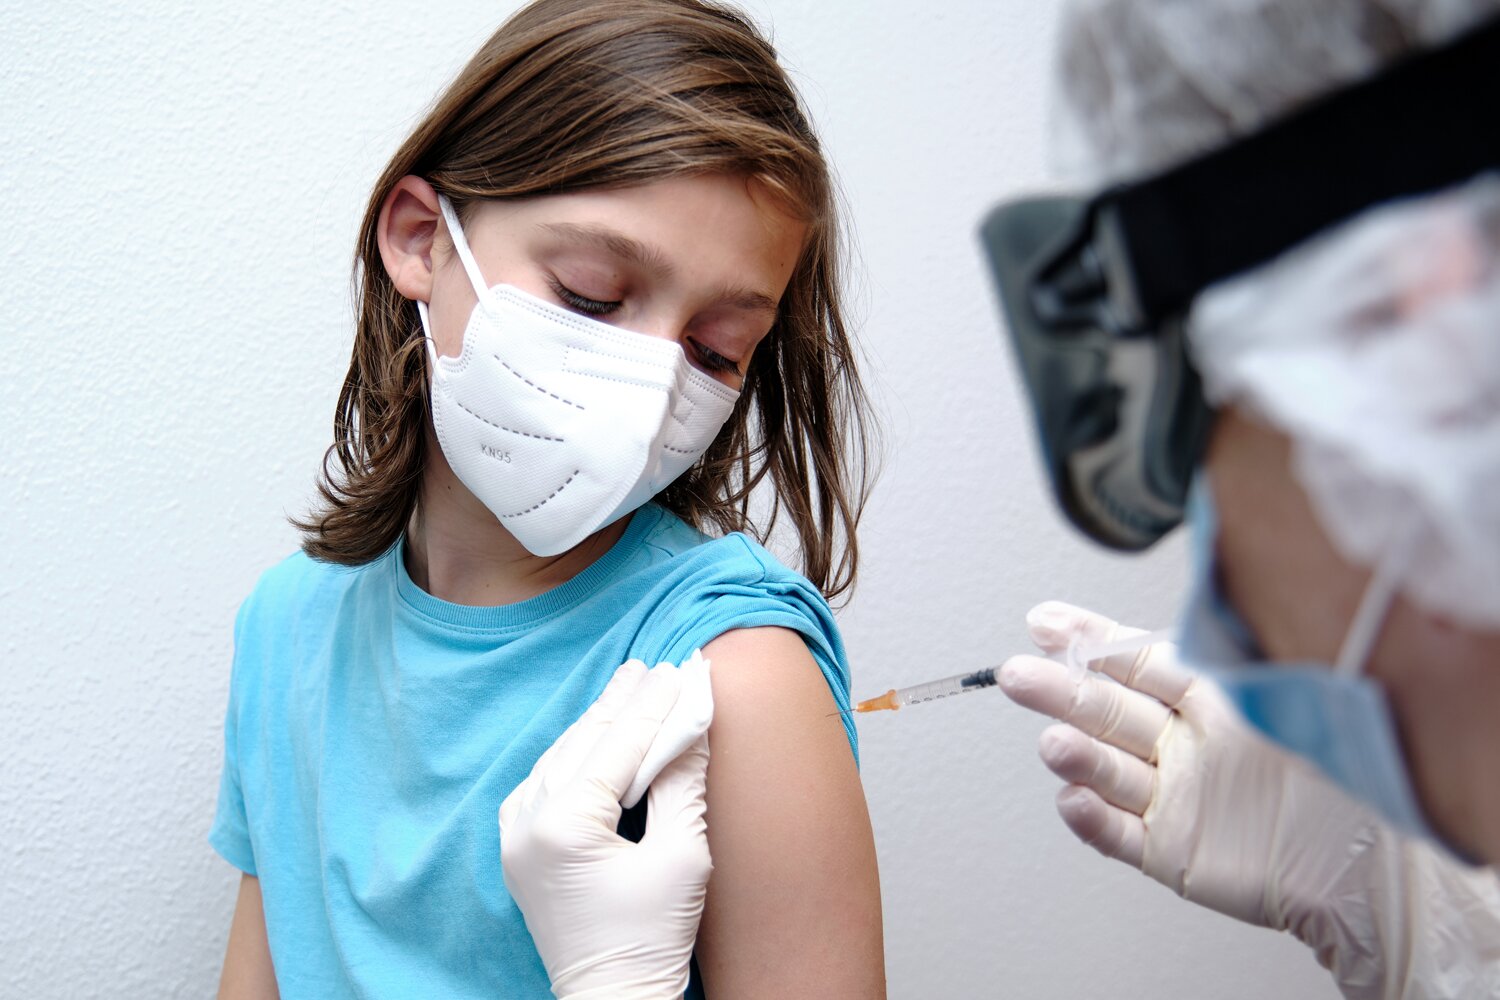 FDA cấp phép sử dụng khẩn cấp liều tăng cường vaccine Pfizer - BioNTech COVID-19 ở trẻ em từ 5 đến 11 tuổi - Ảnh 3.